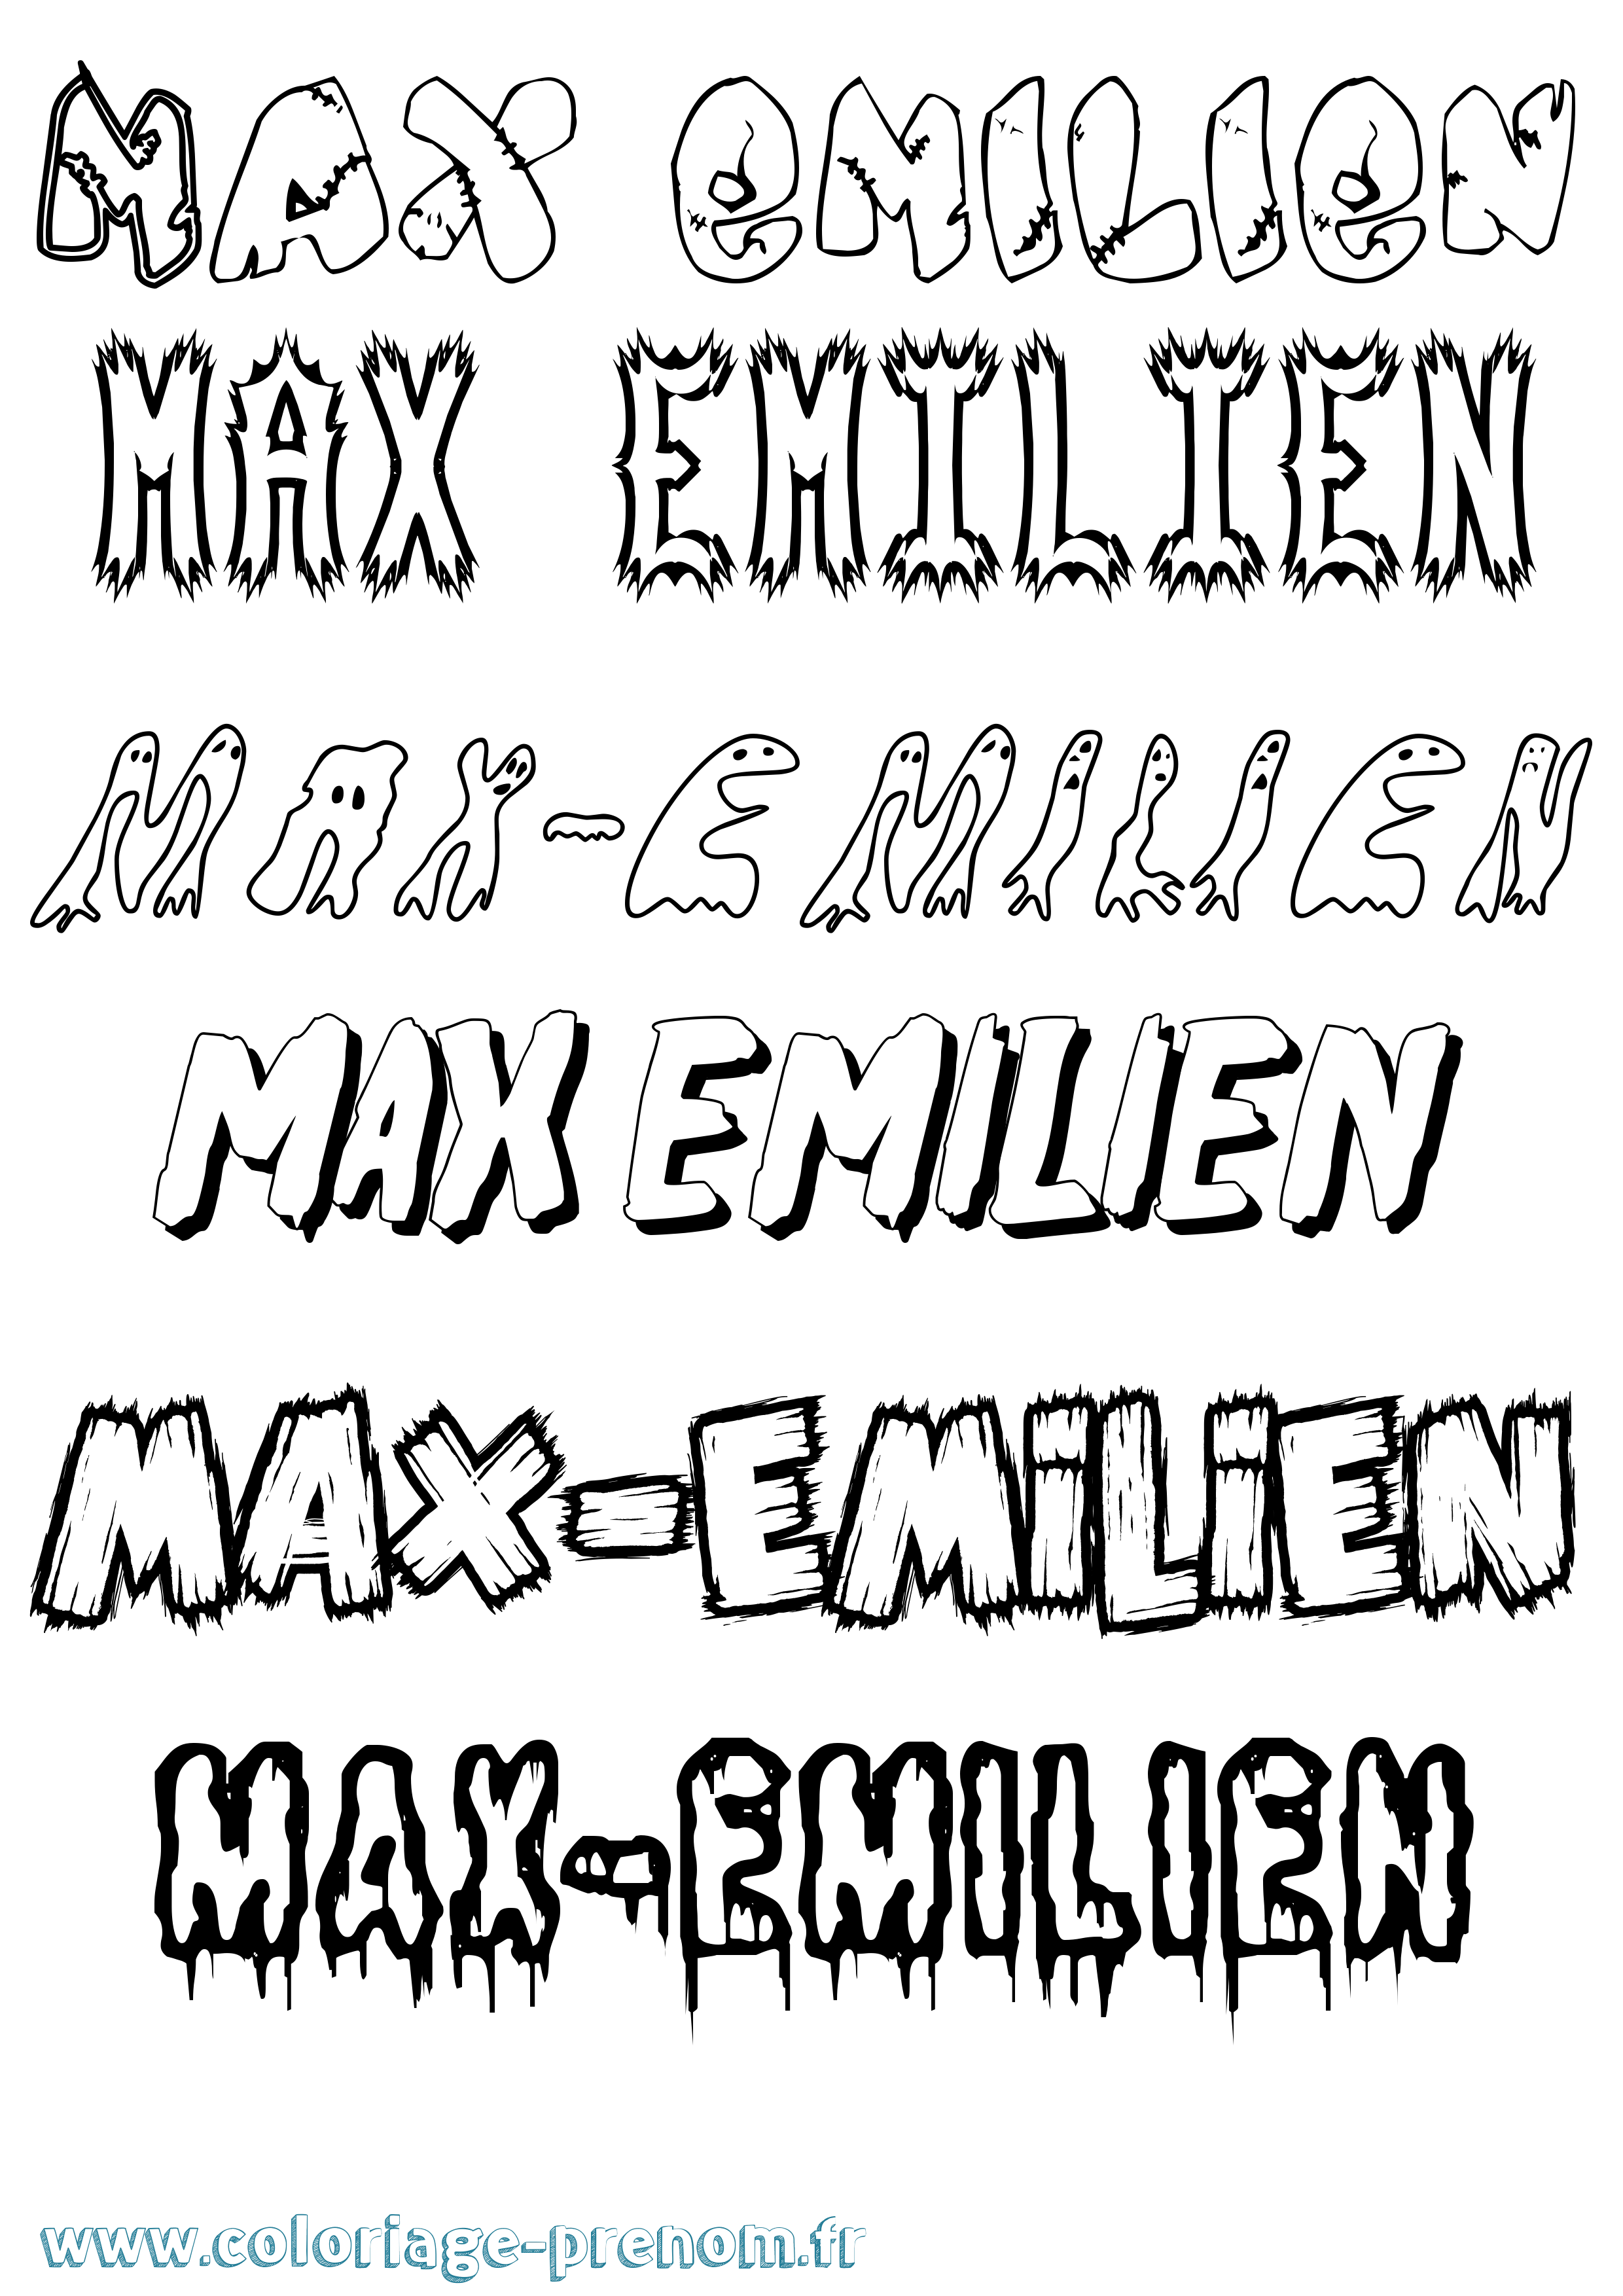 Coloriage prénom Max-Emilien Frisson